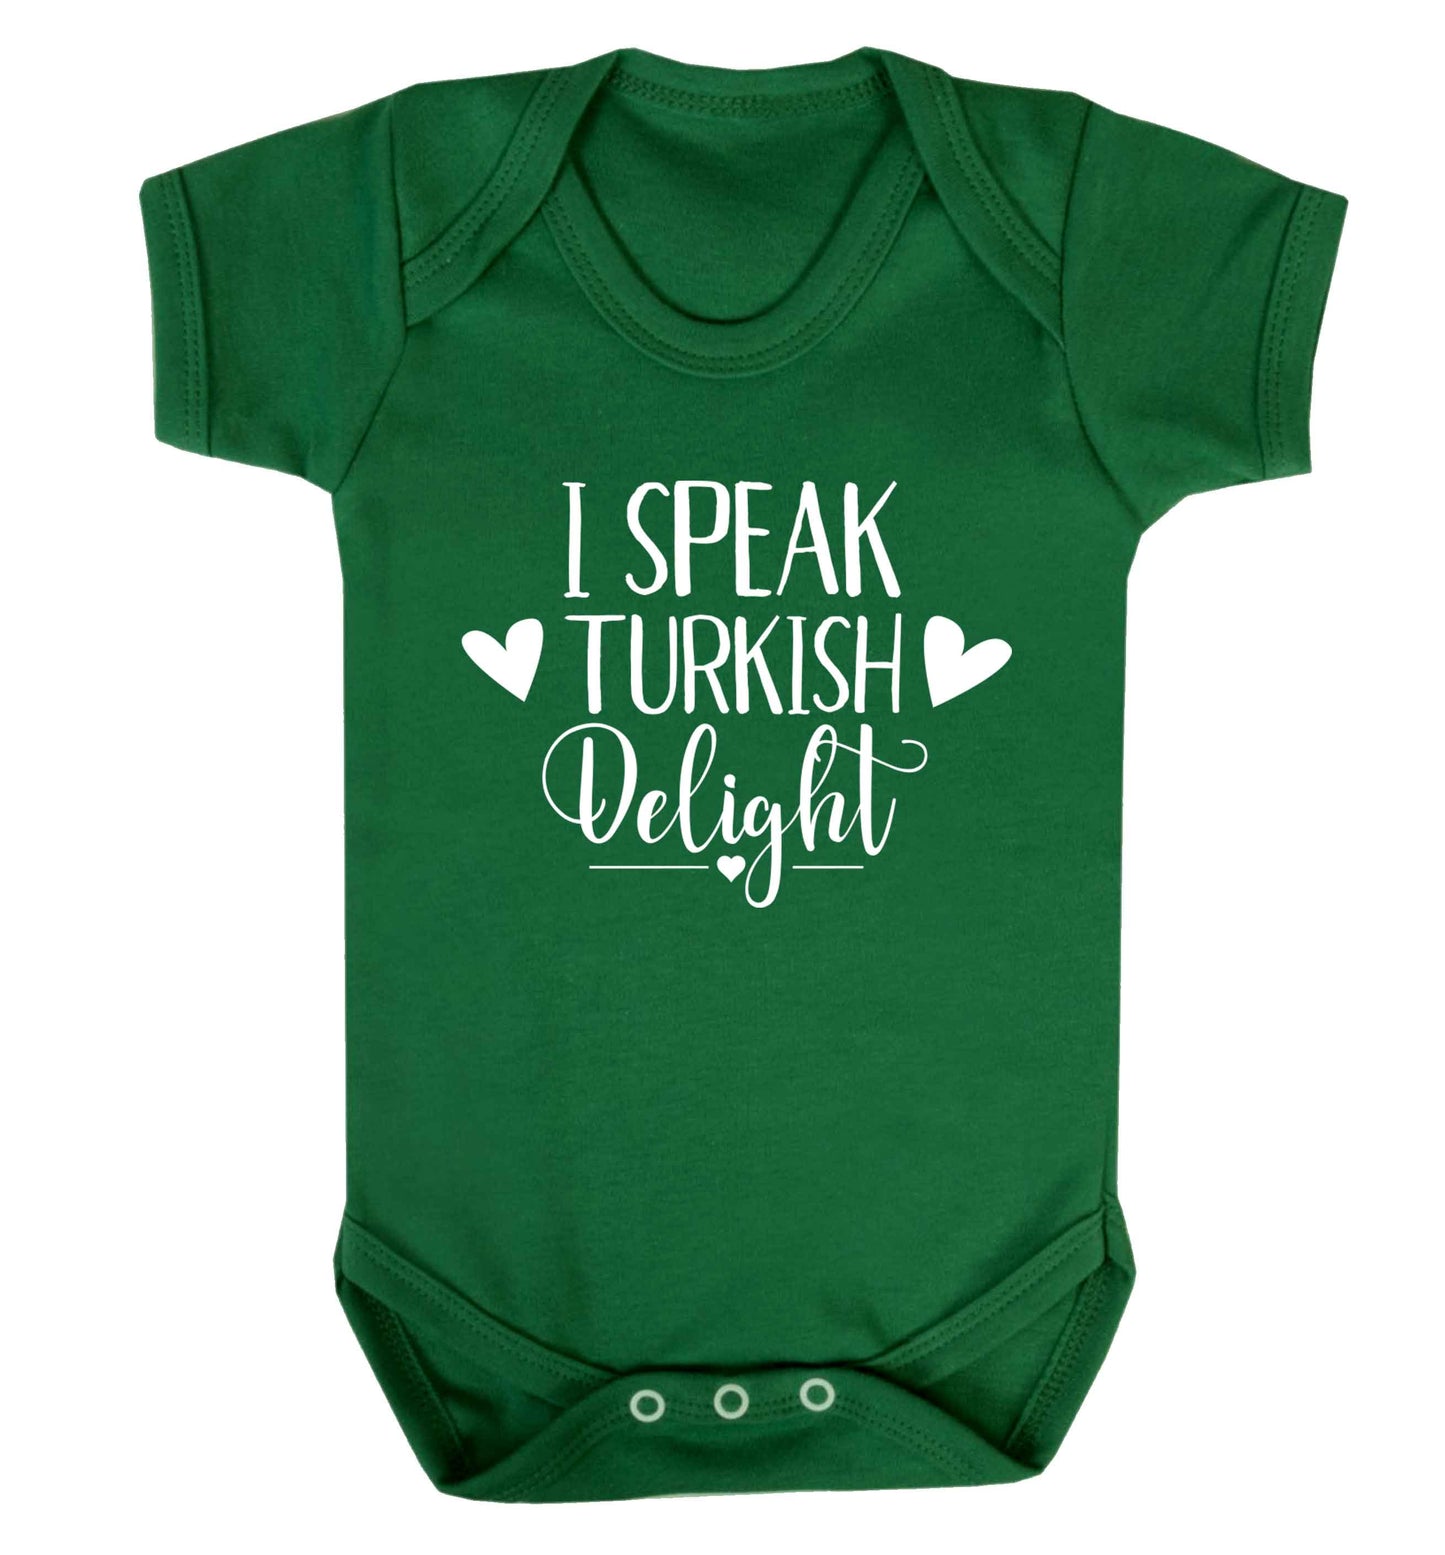 I speak turkish...delight Baby Vest green 18-24 months